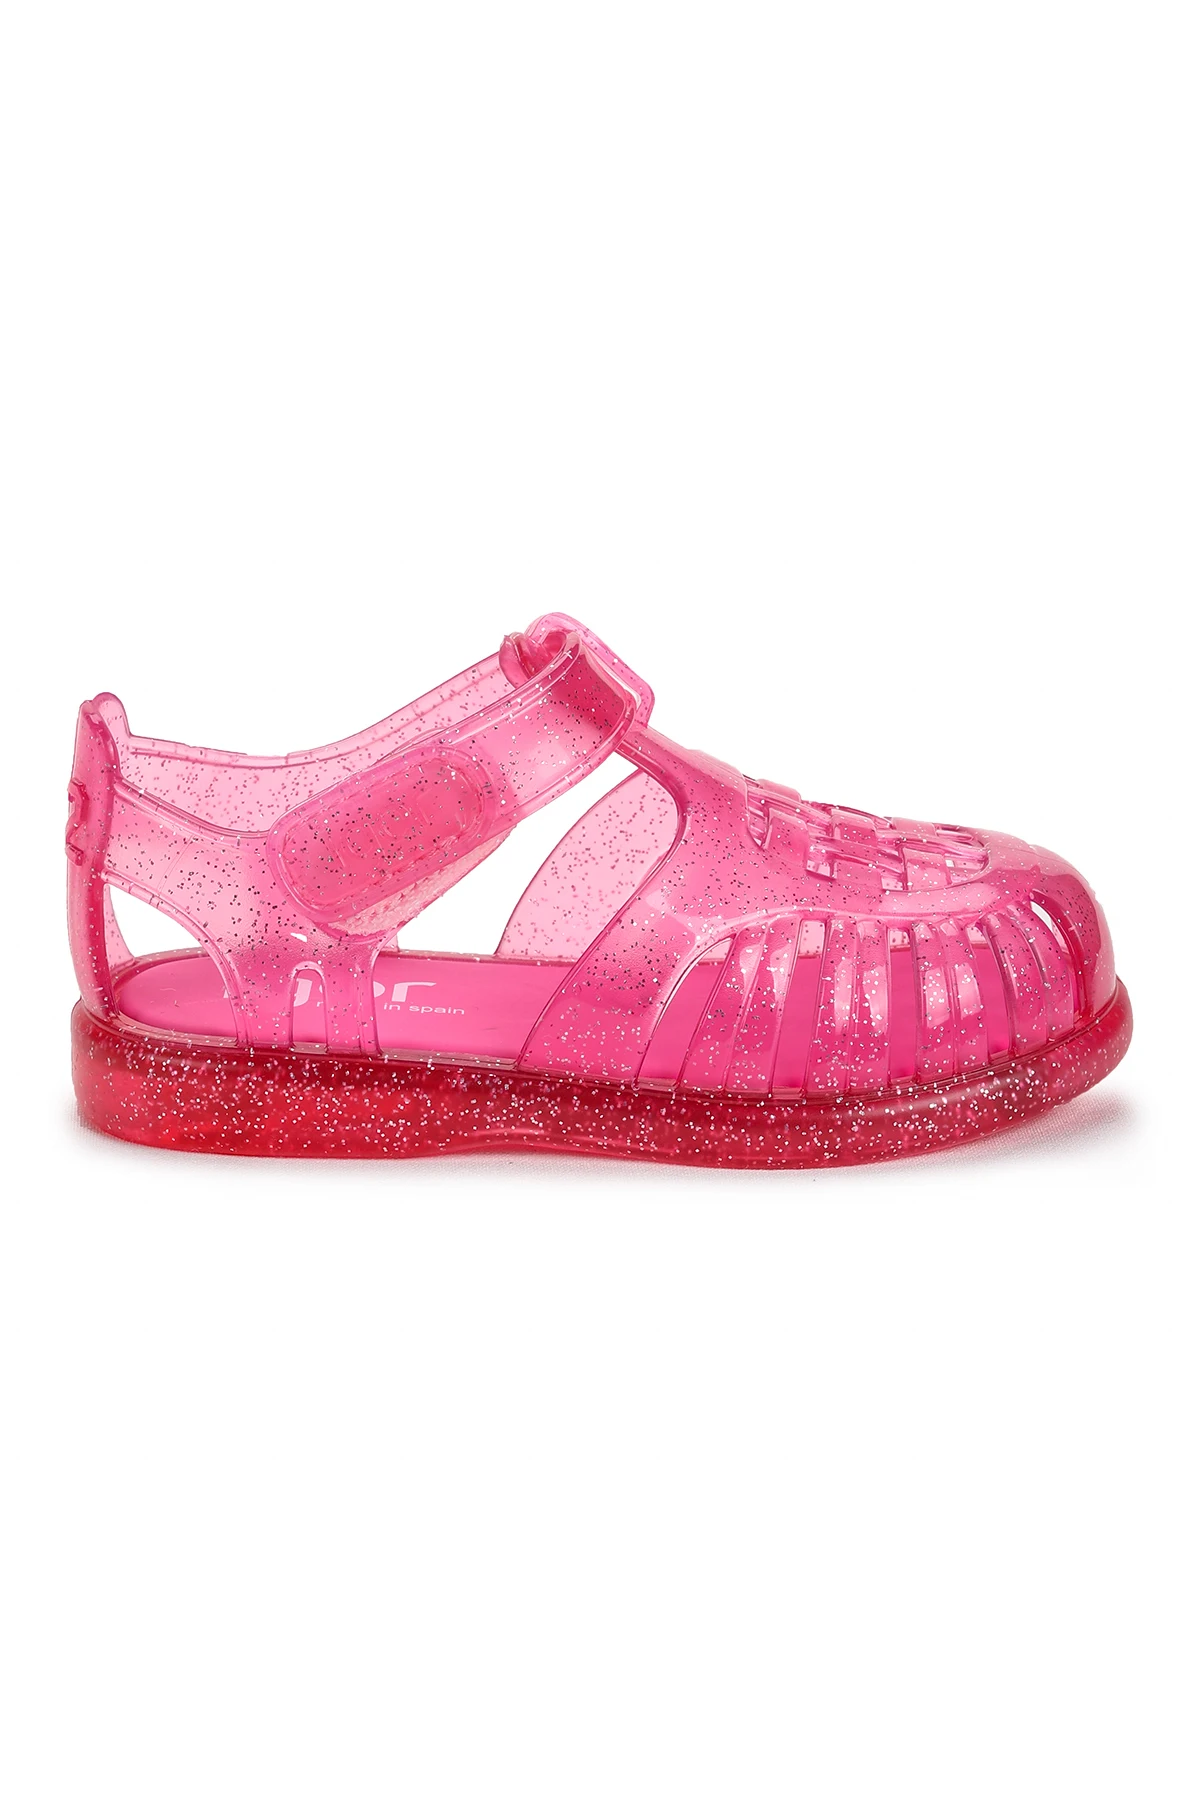 

IGOR Tobby Gloss Glitter Girl/Boy's Sandals S10308